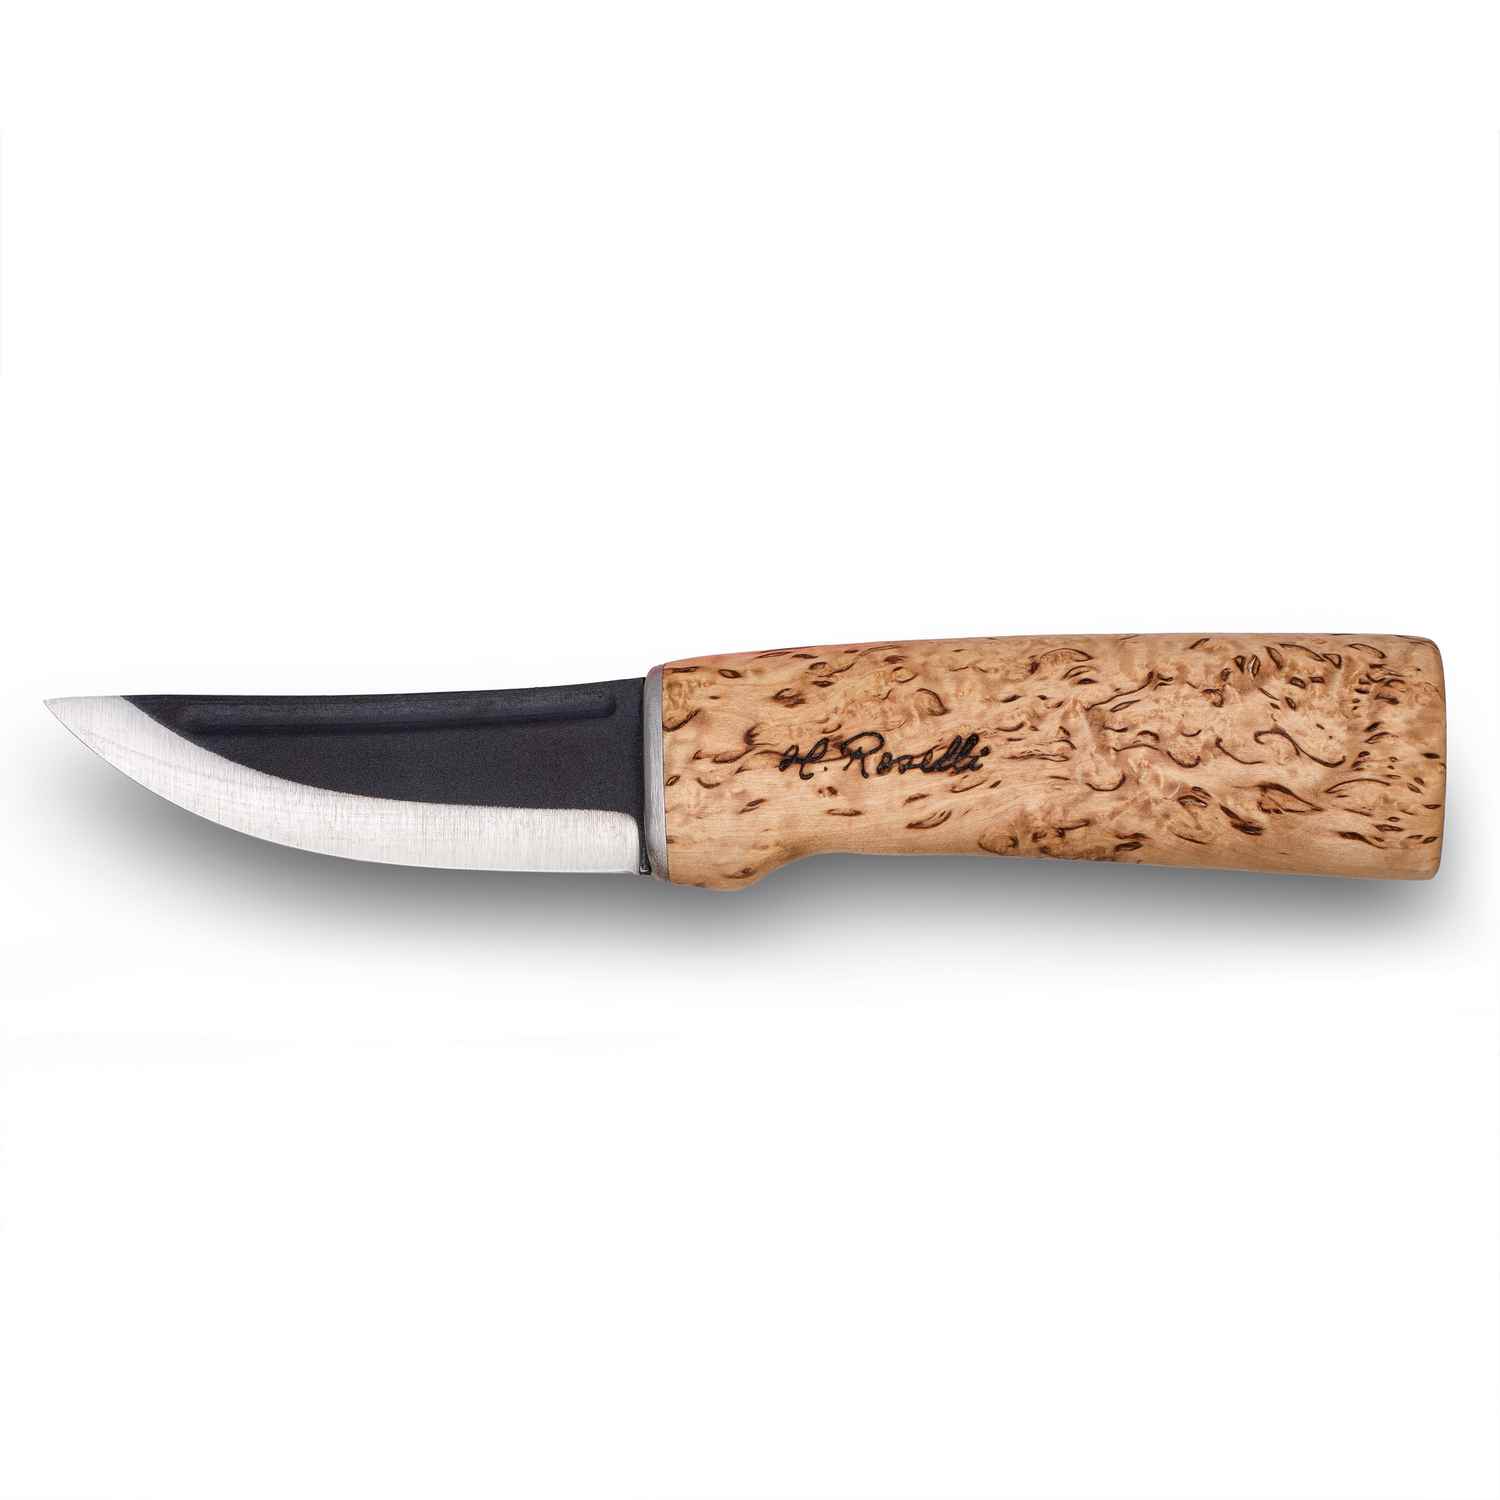 Roselli R100 "Hunting Knife"